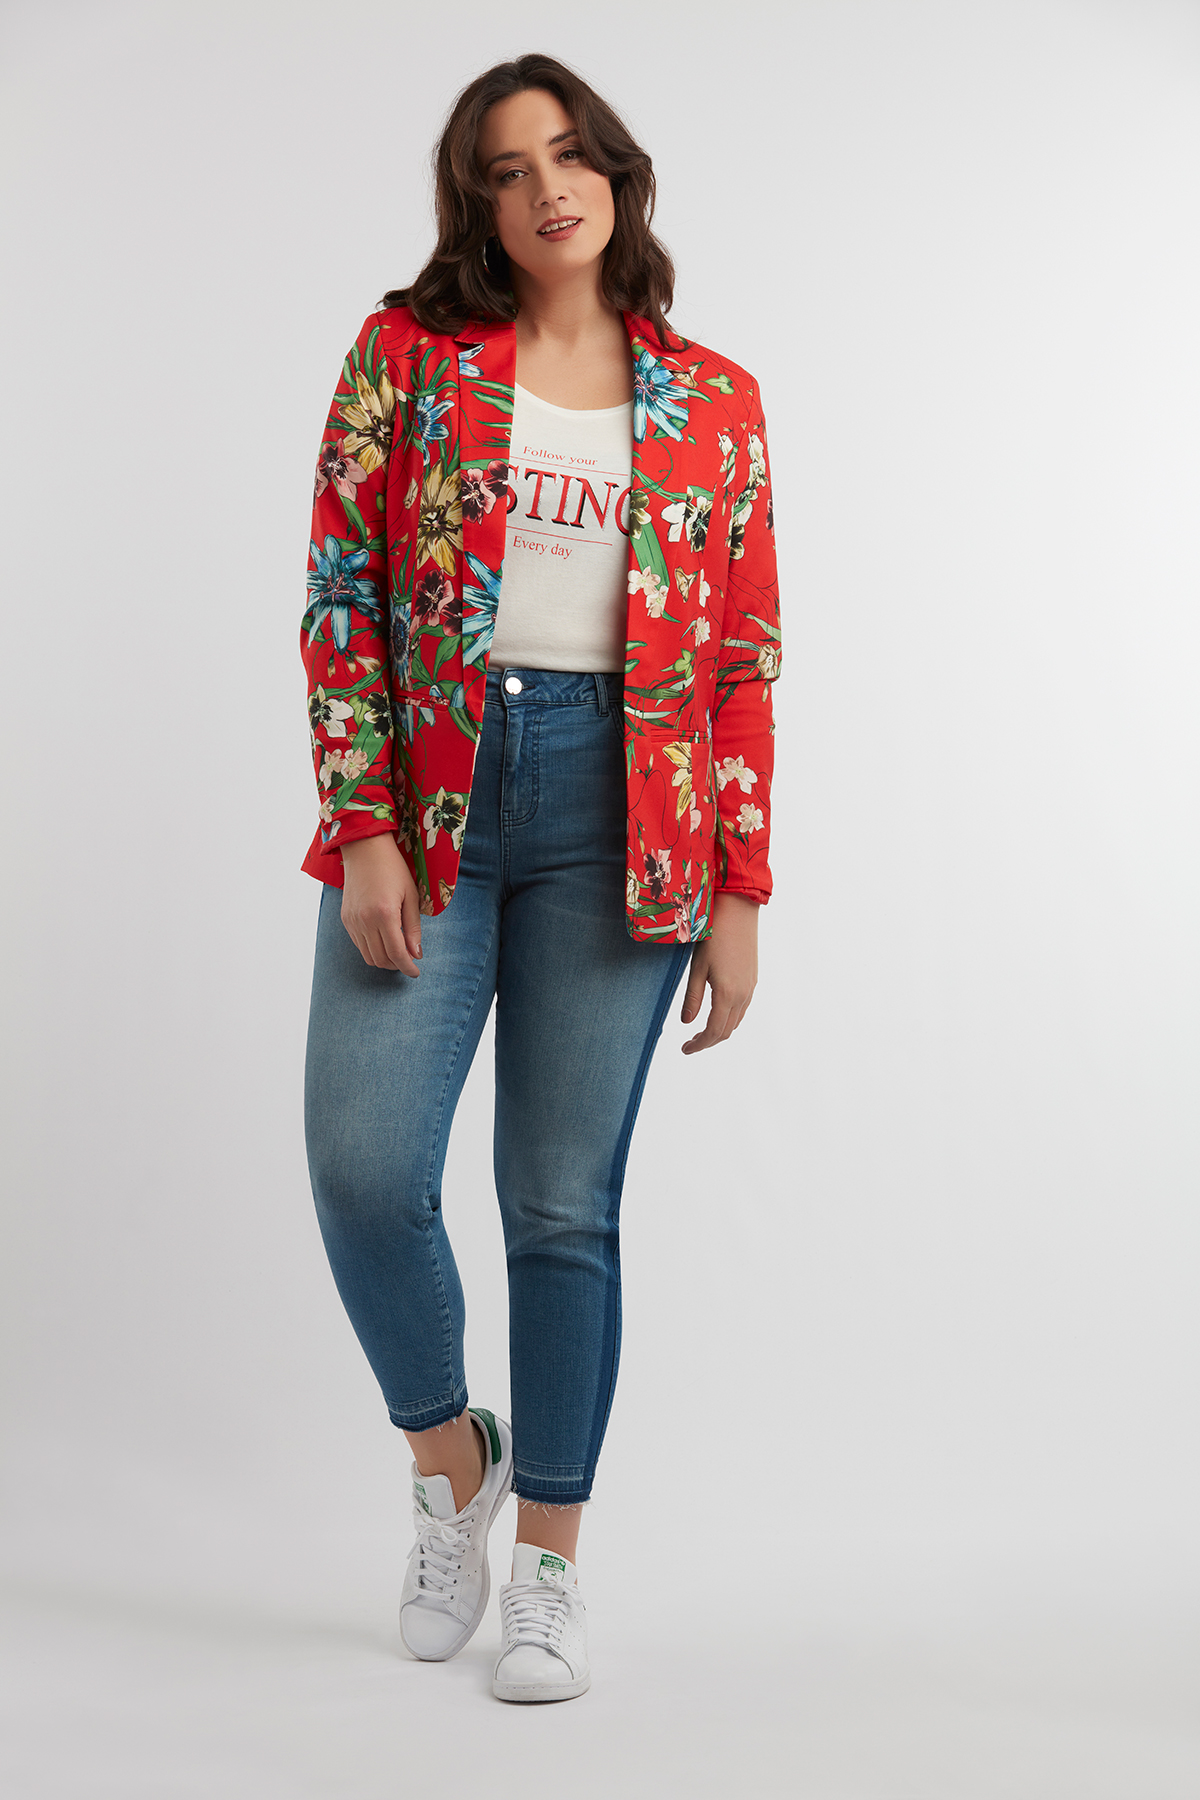 Damen Blazer mit Blumenmuster | Official MS Mode® online store